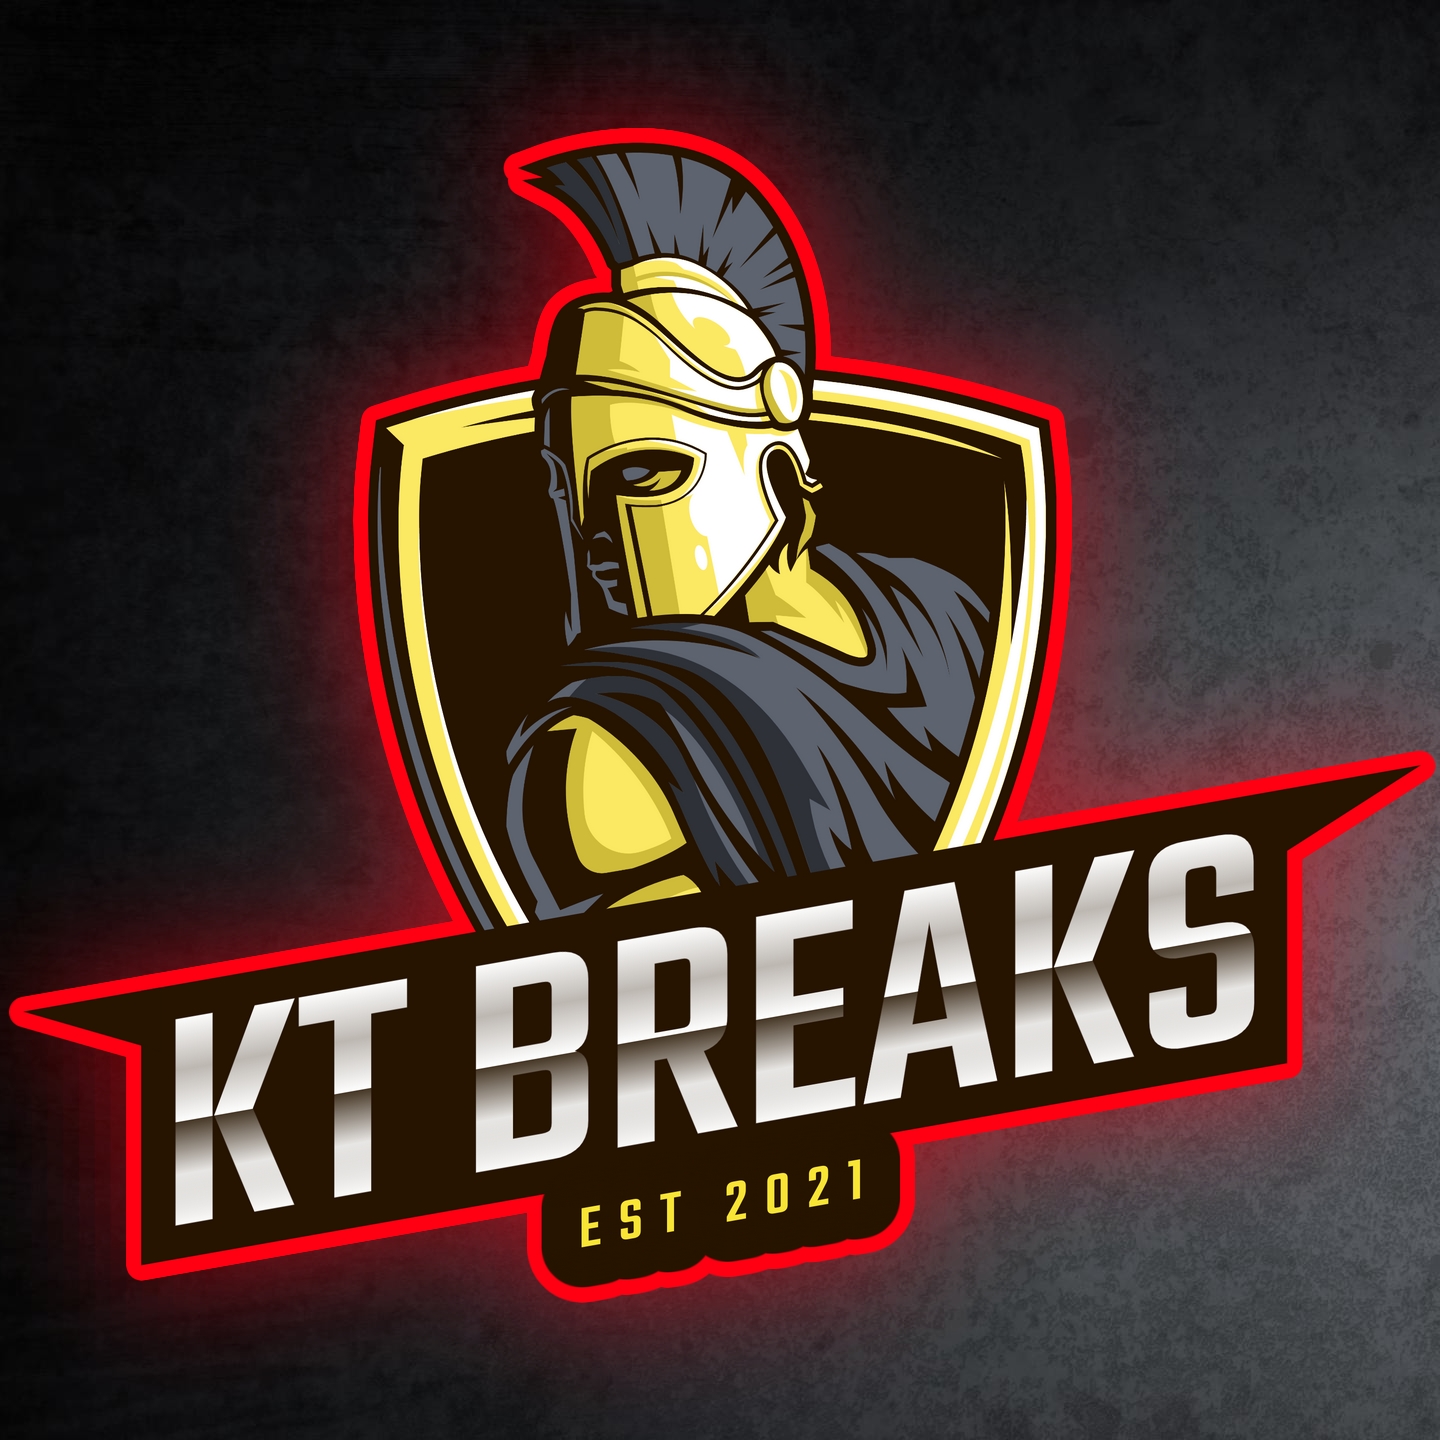 KT Breaks